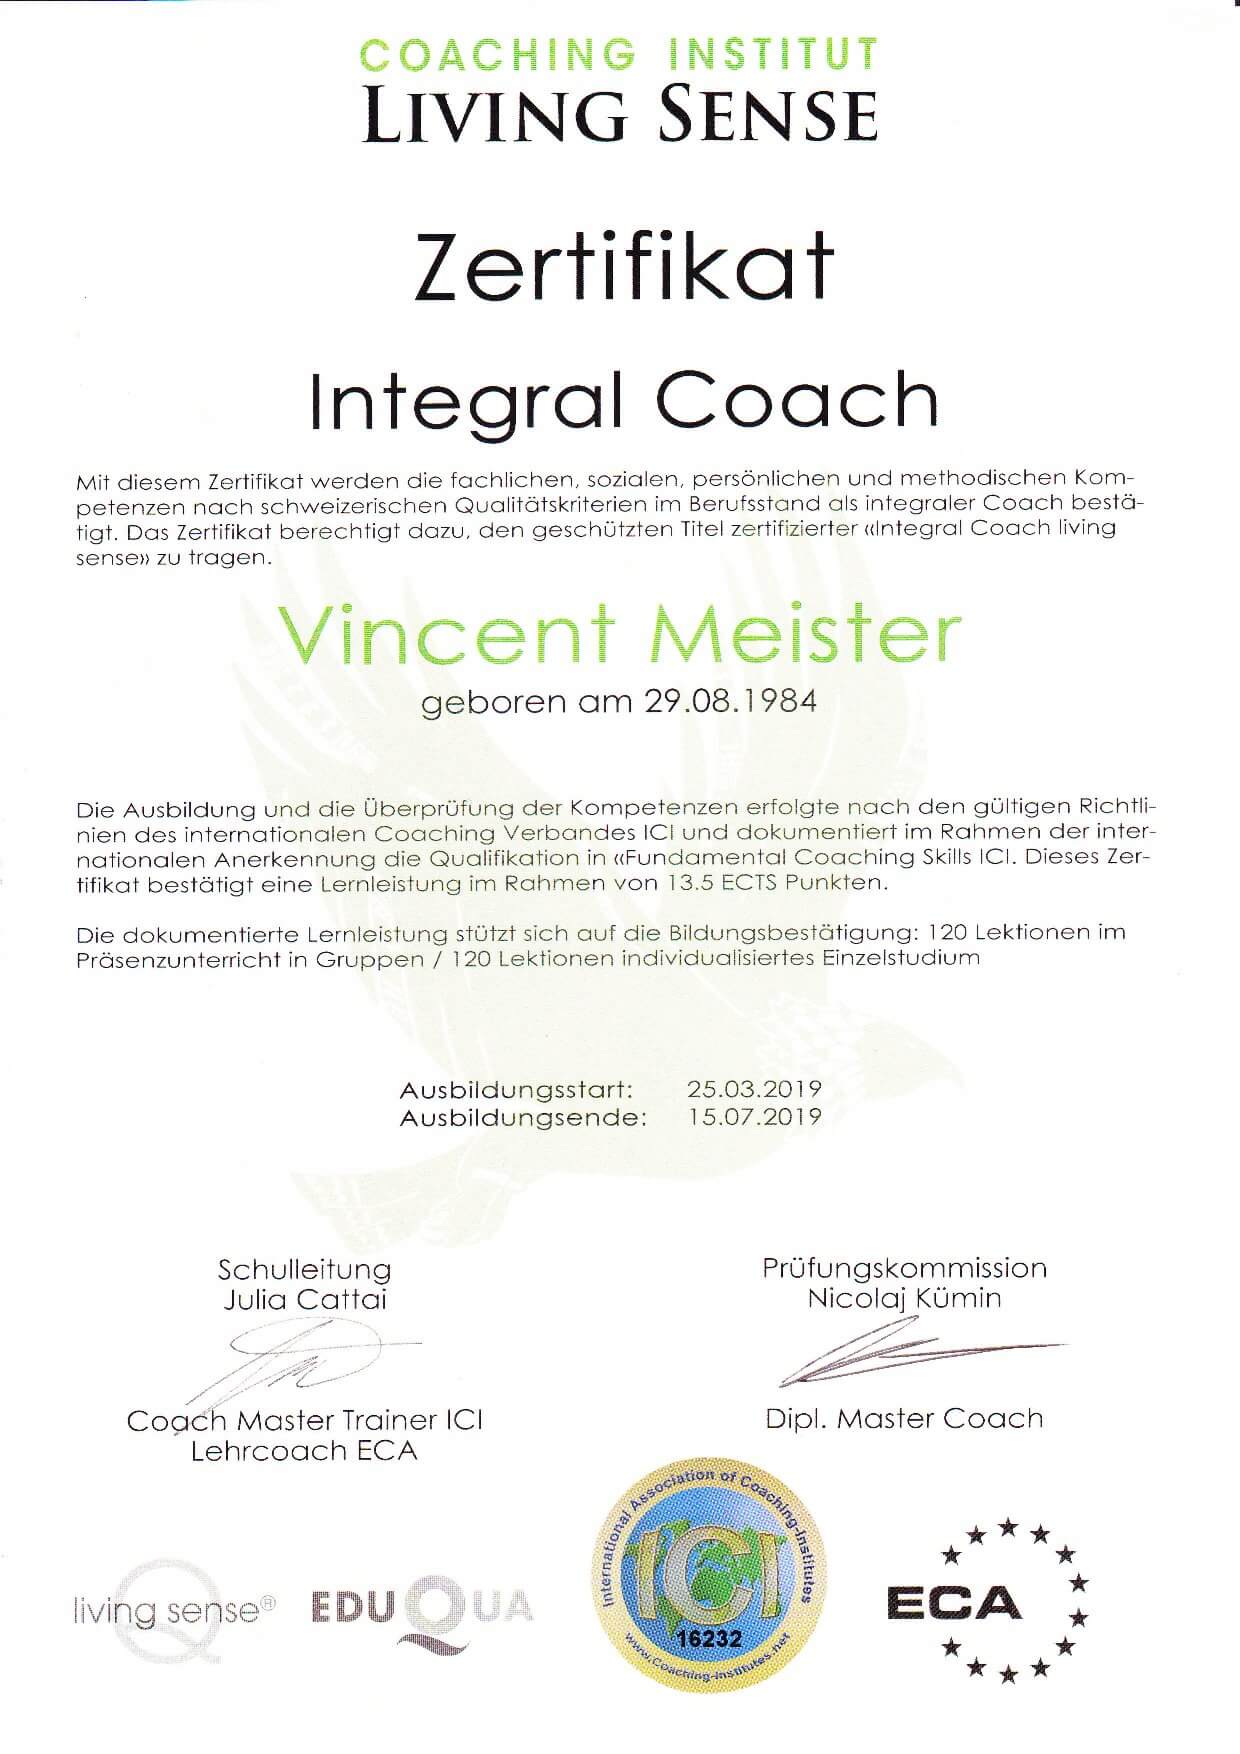 Cert Integral Coach